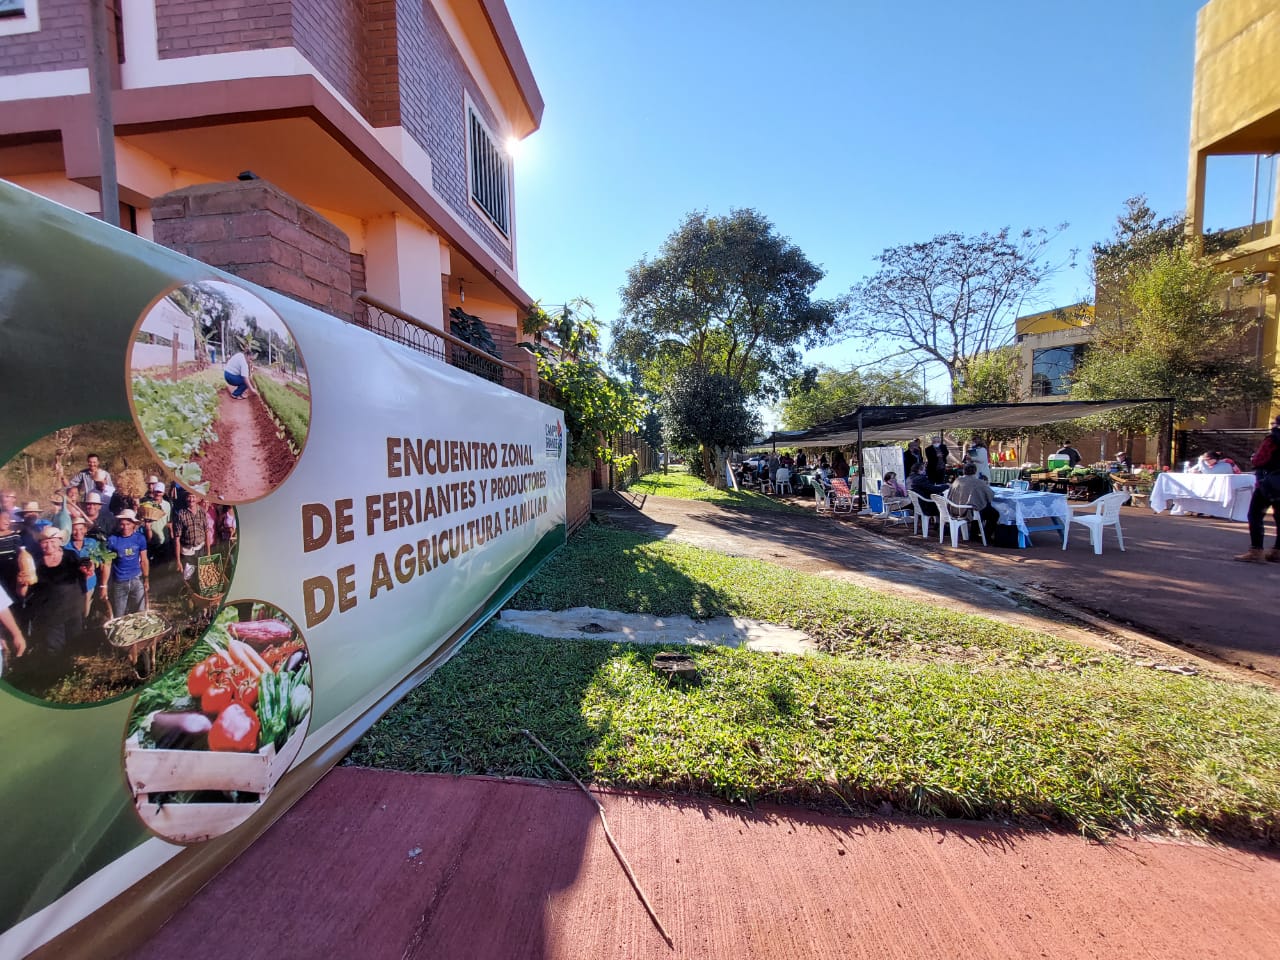 Encuentro Zonal  Cainguas “De productos de la agricultura familiar y artesanos”